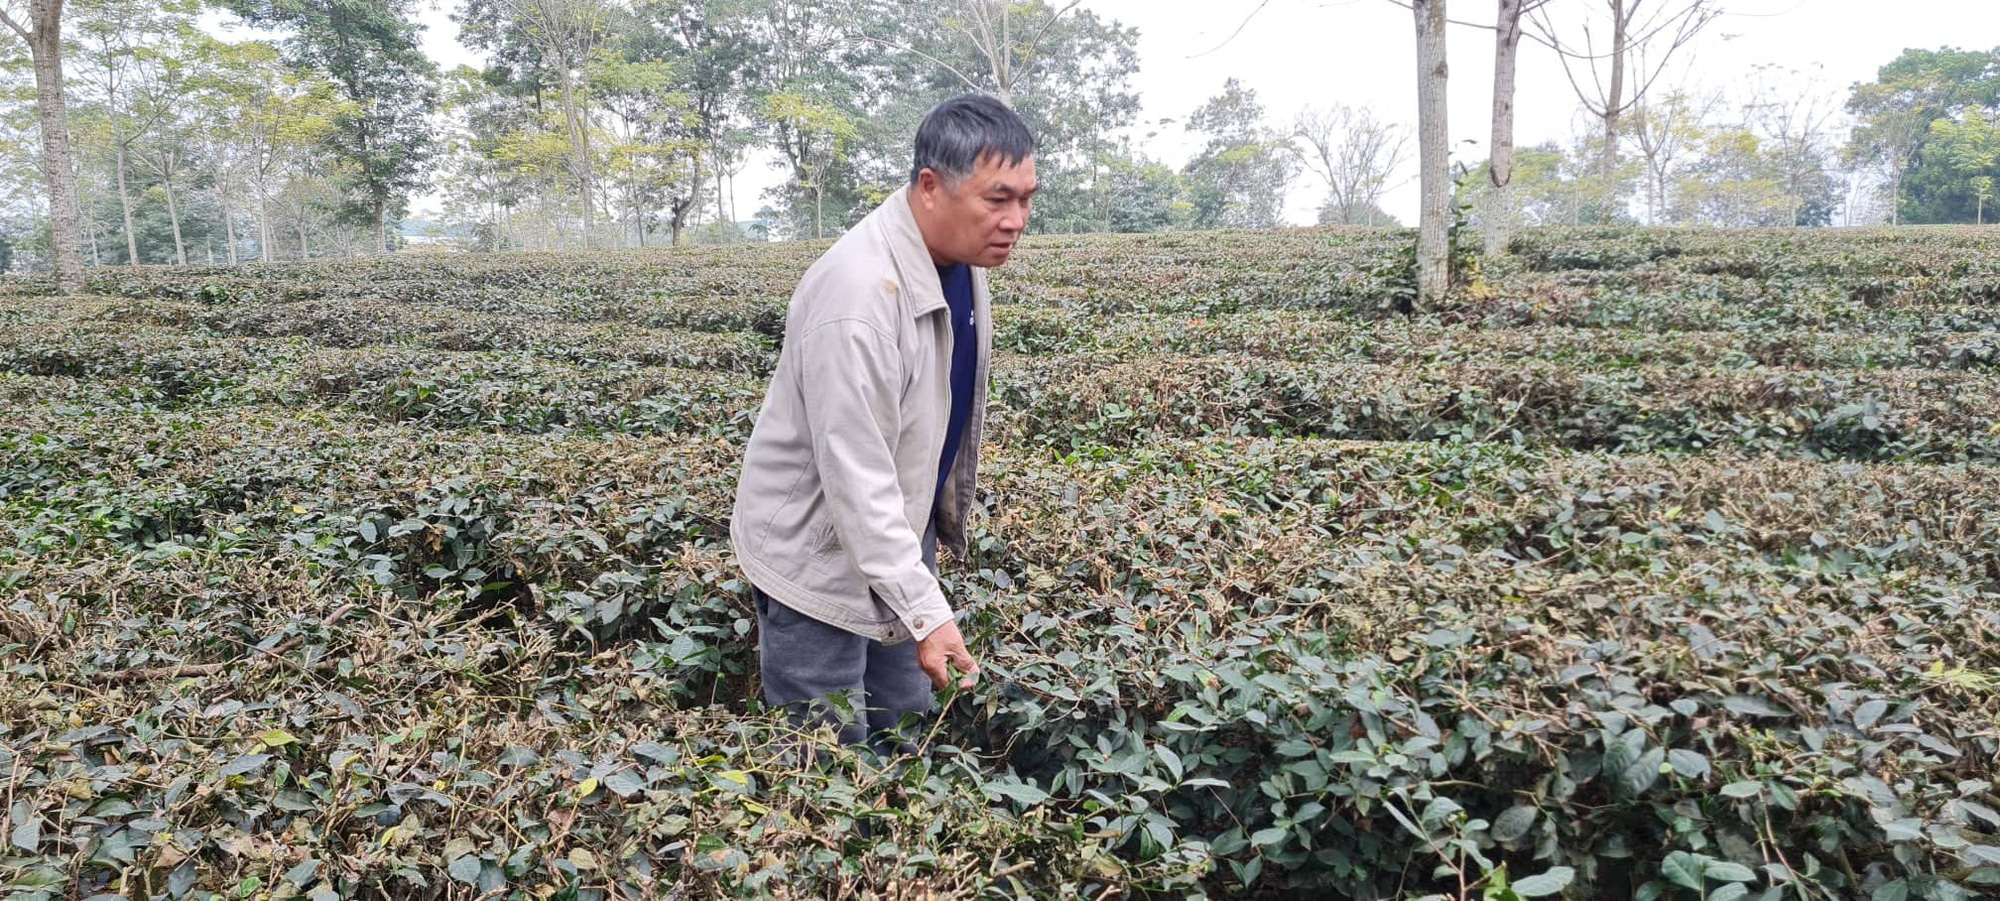 Tuyên Quang: Người trồng chè mất ăn mất ngủ vì bị hủy hợp đồng giao khoán  - Ảnh 1.